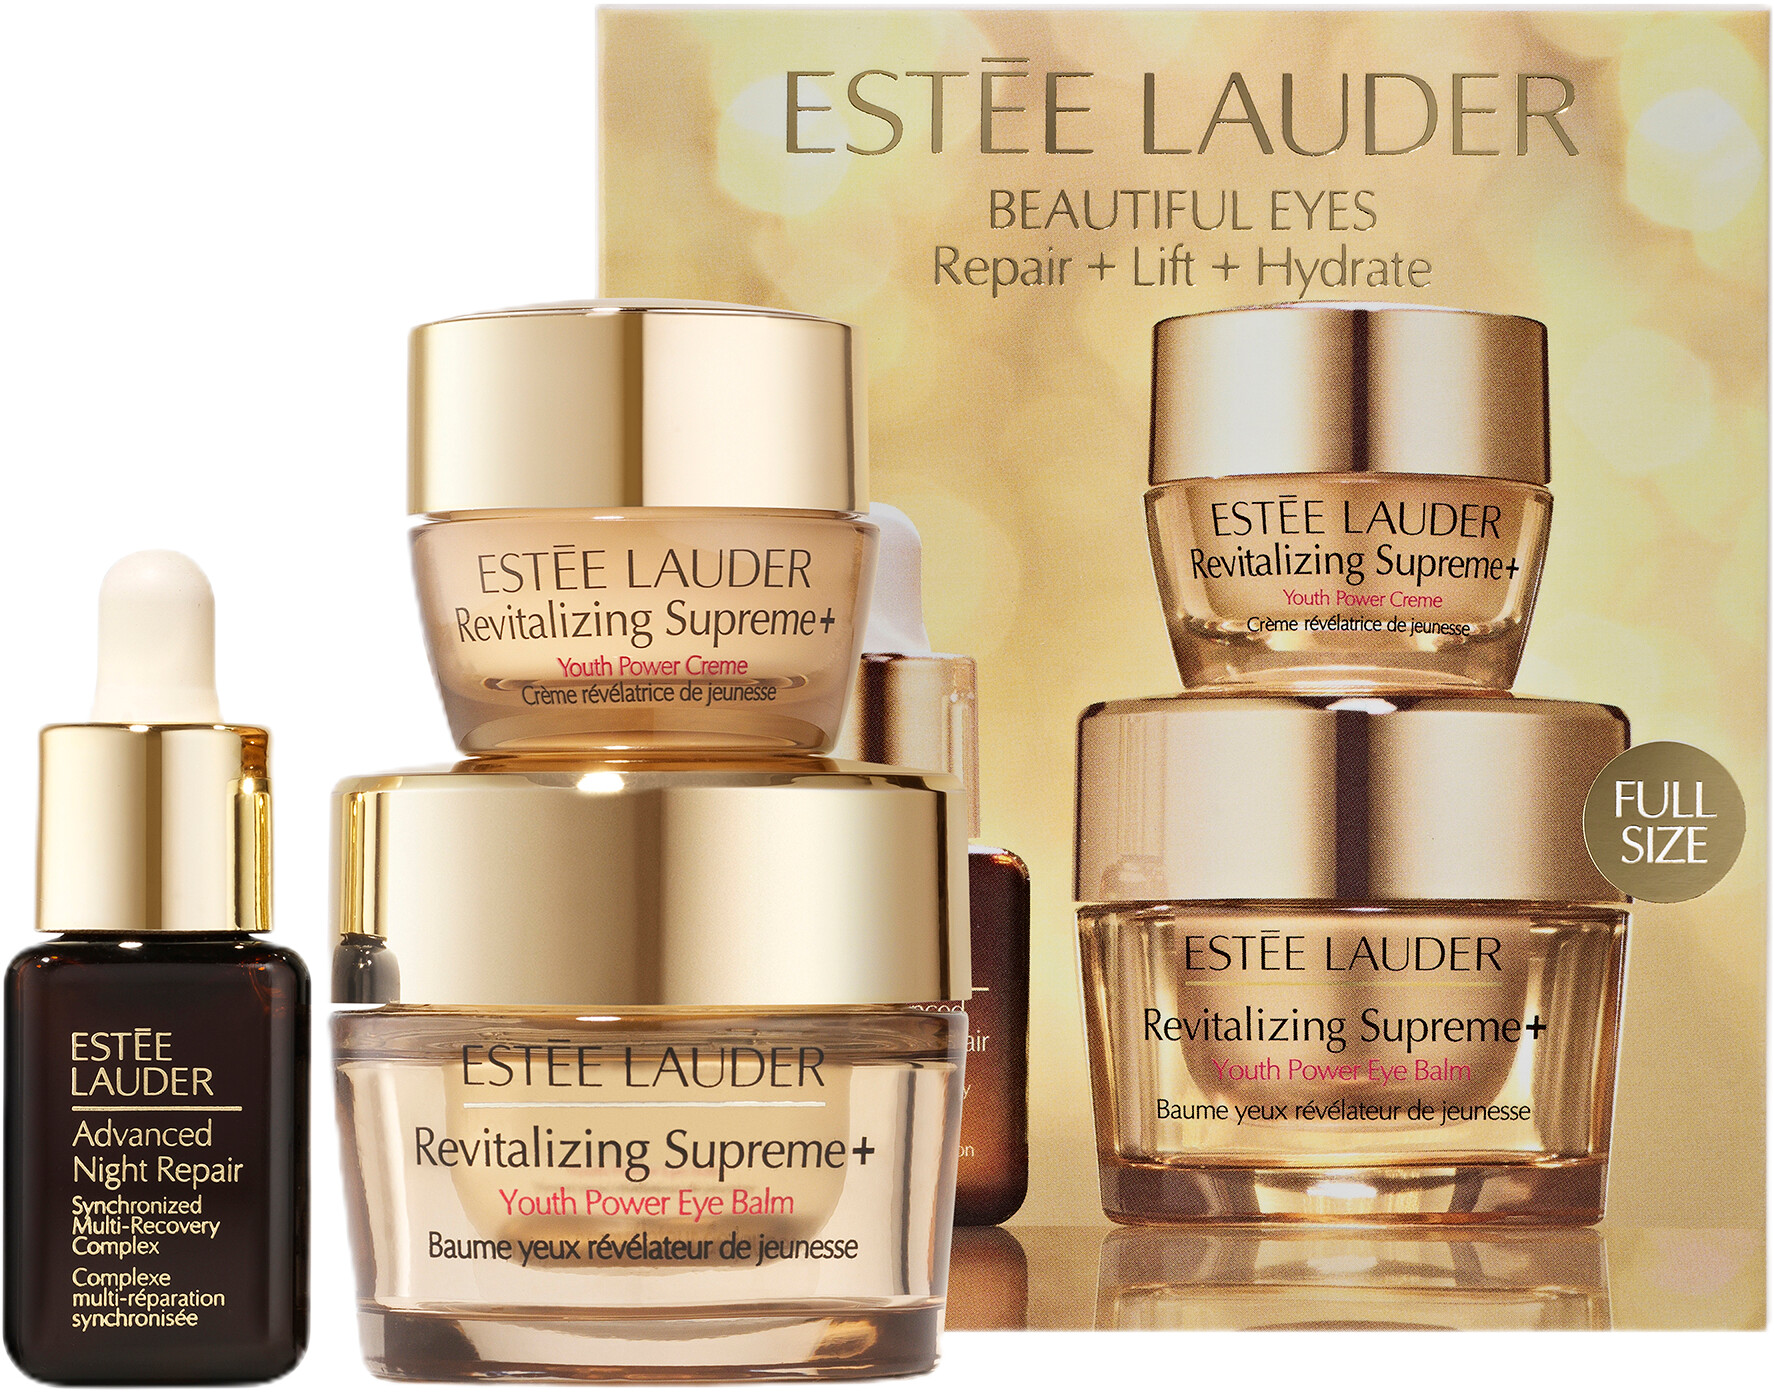 Estee Lauder Revitalizing Supreme+ Beautiful Eyes Repair + Lift + Hydrate Gift Set